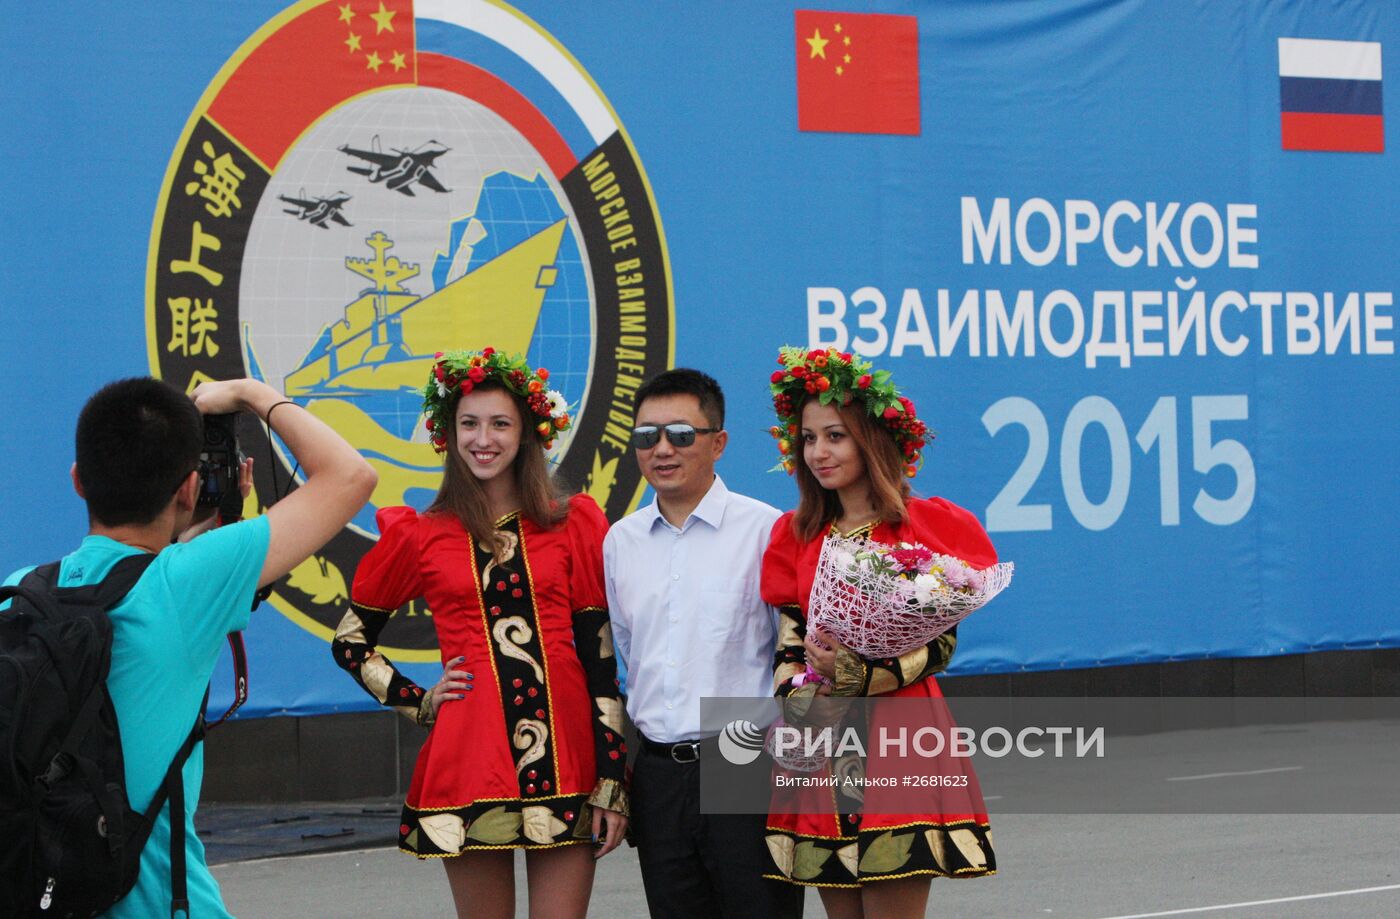 Церемония встречи китайских кораблей во Владивостоке